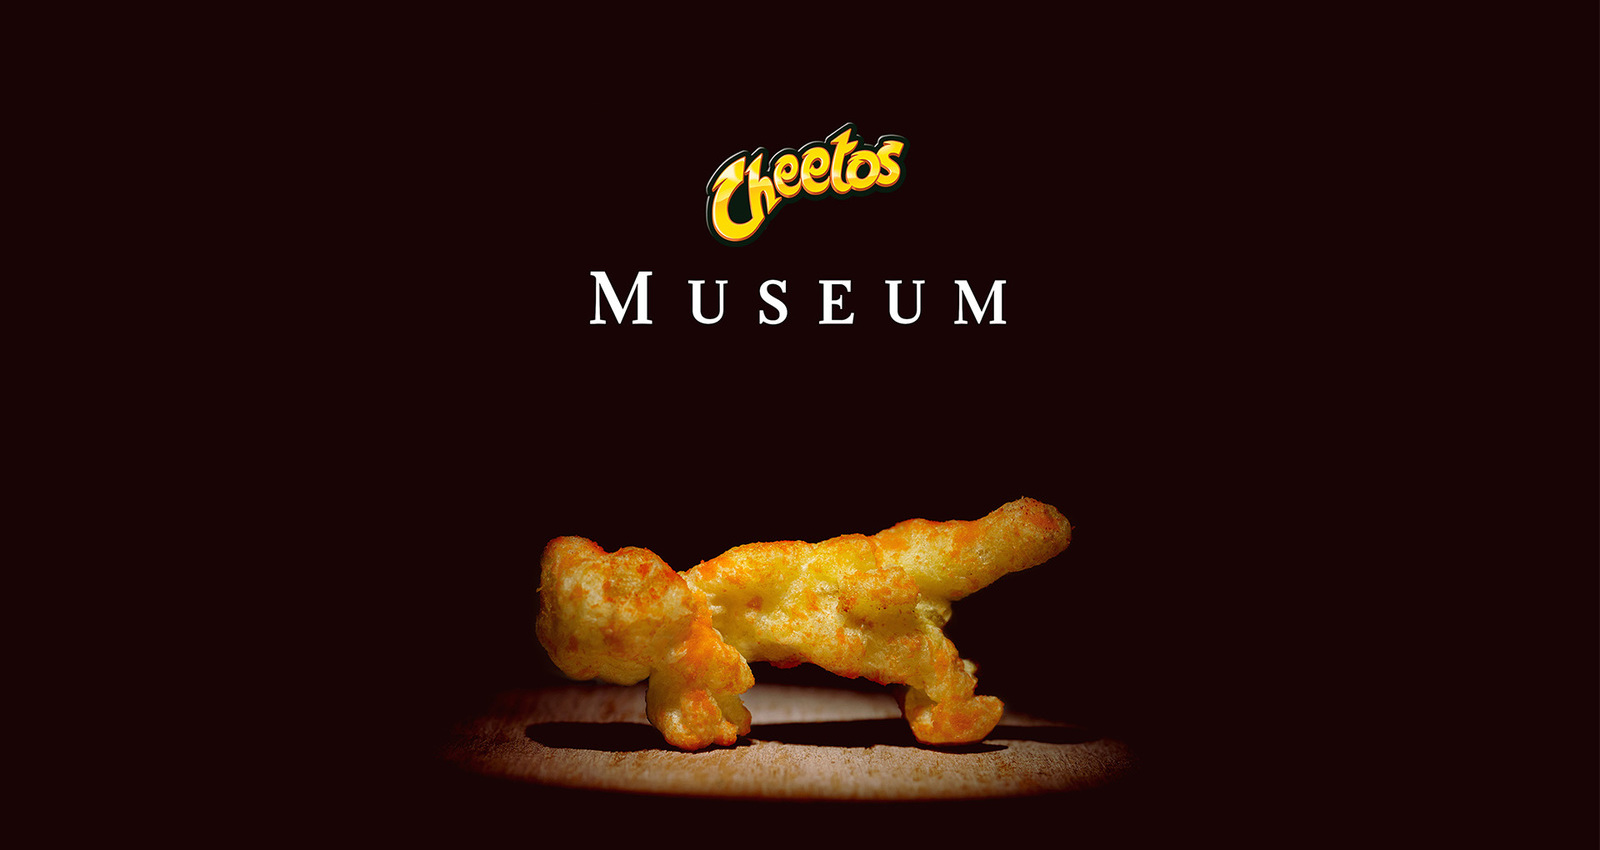 Cheetos Museum 